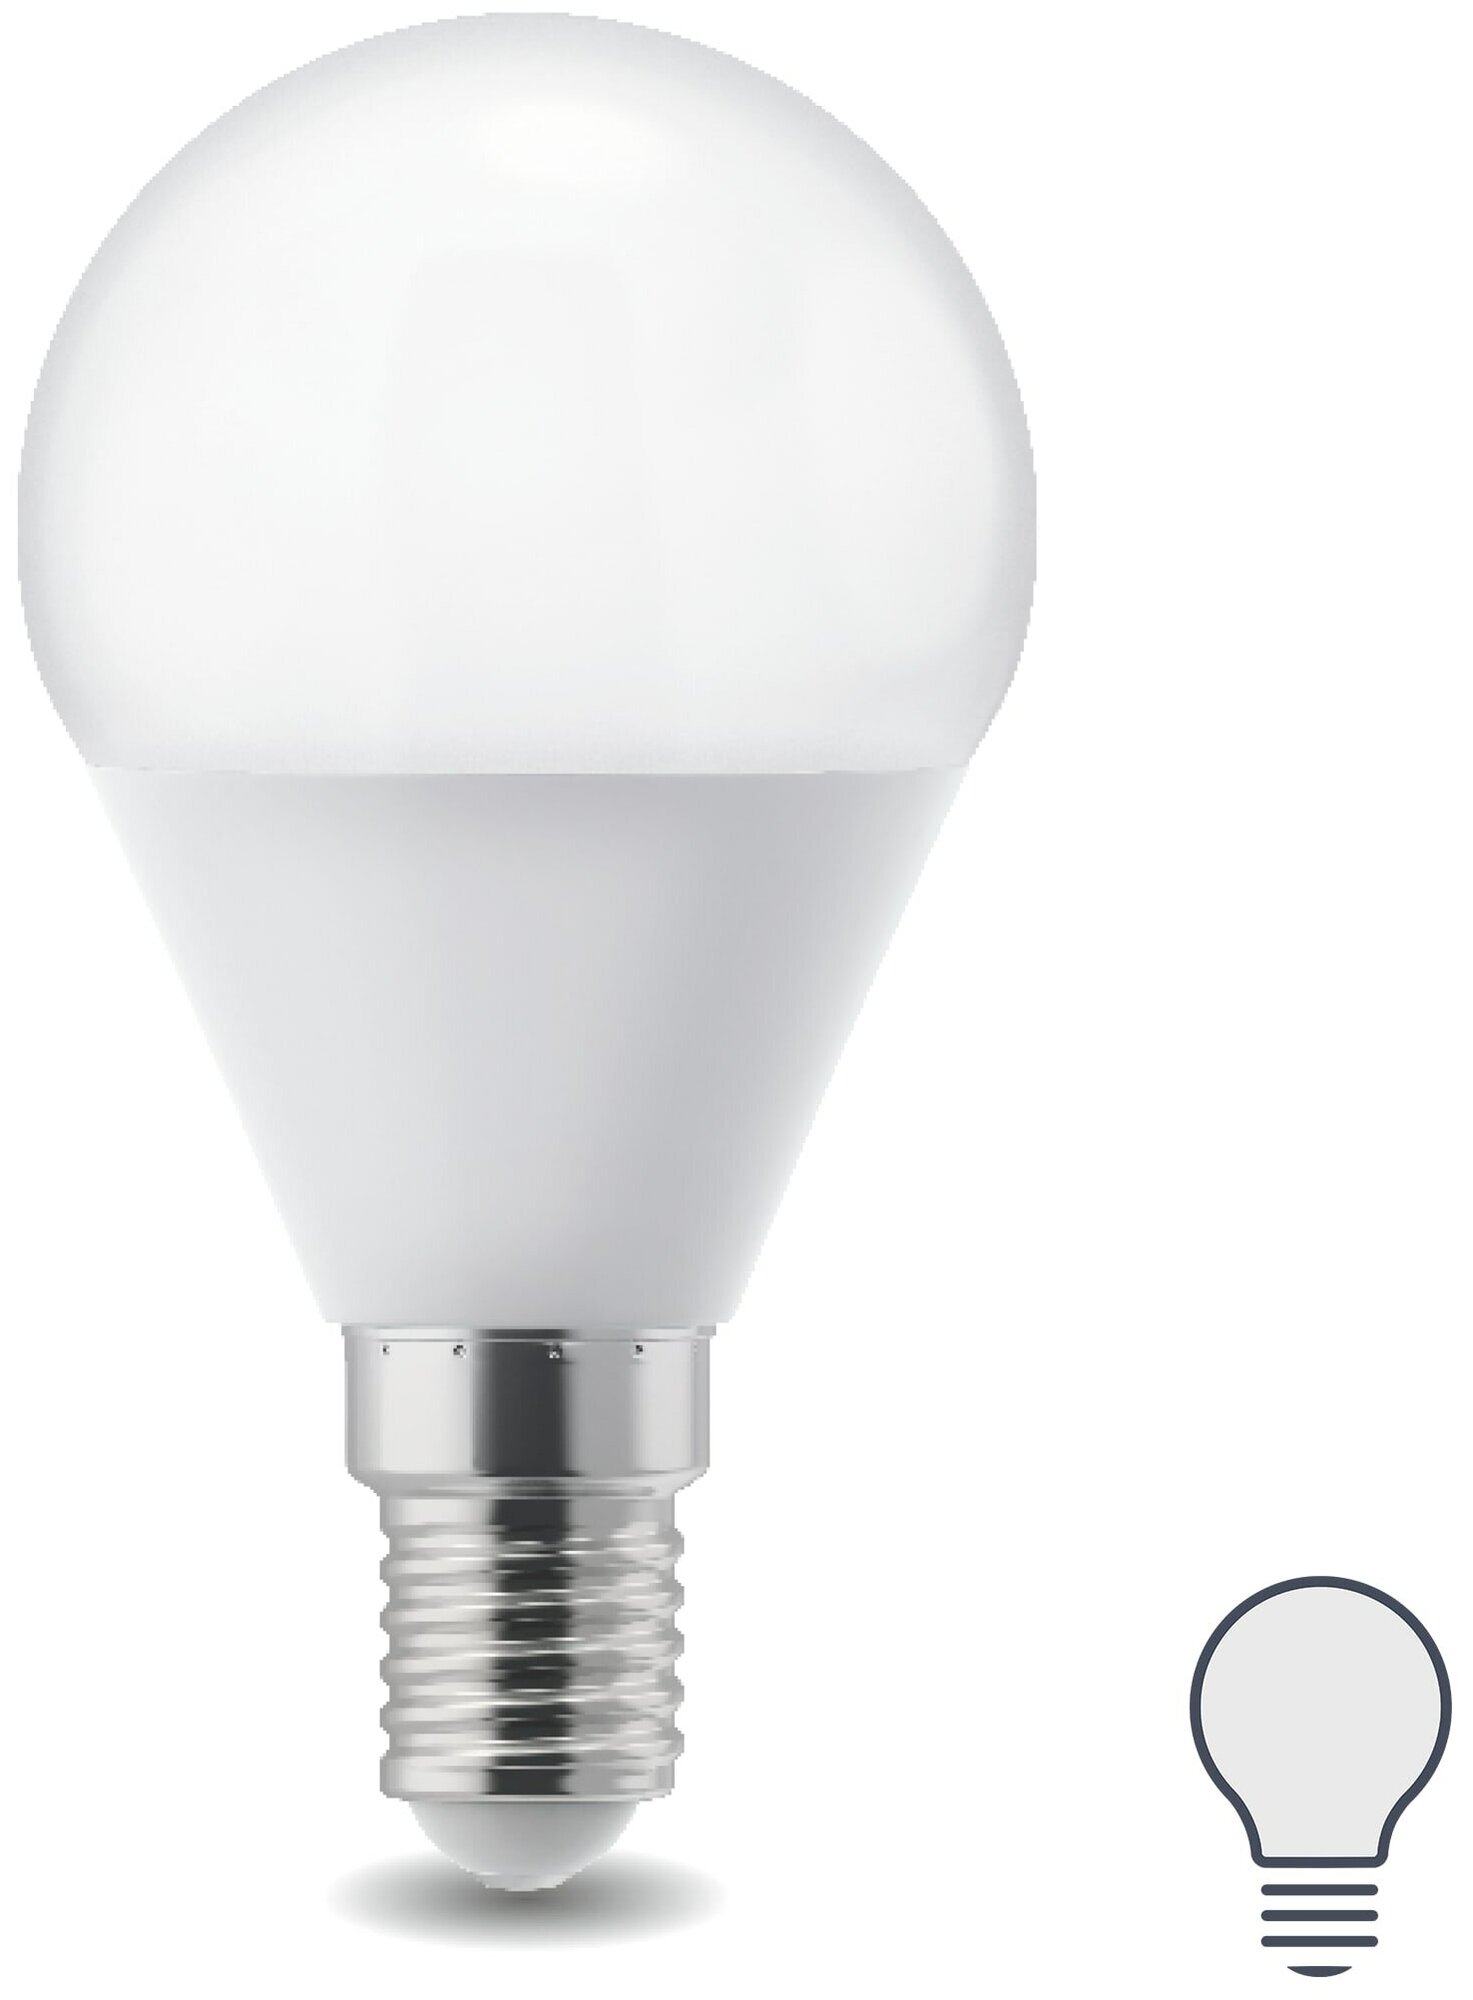 Лампа светодиодная E14 220-240 В 5 Вт шар матовая 400 лм нейтральный белый свет